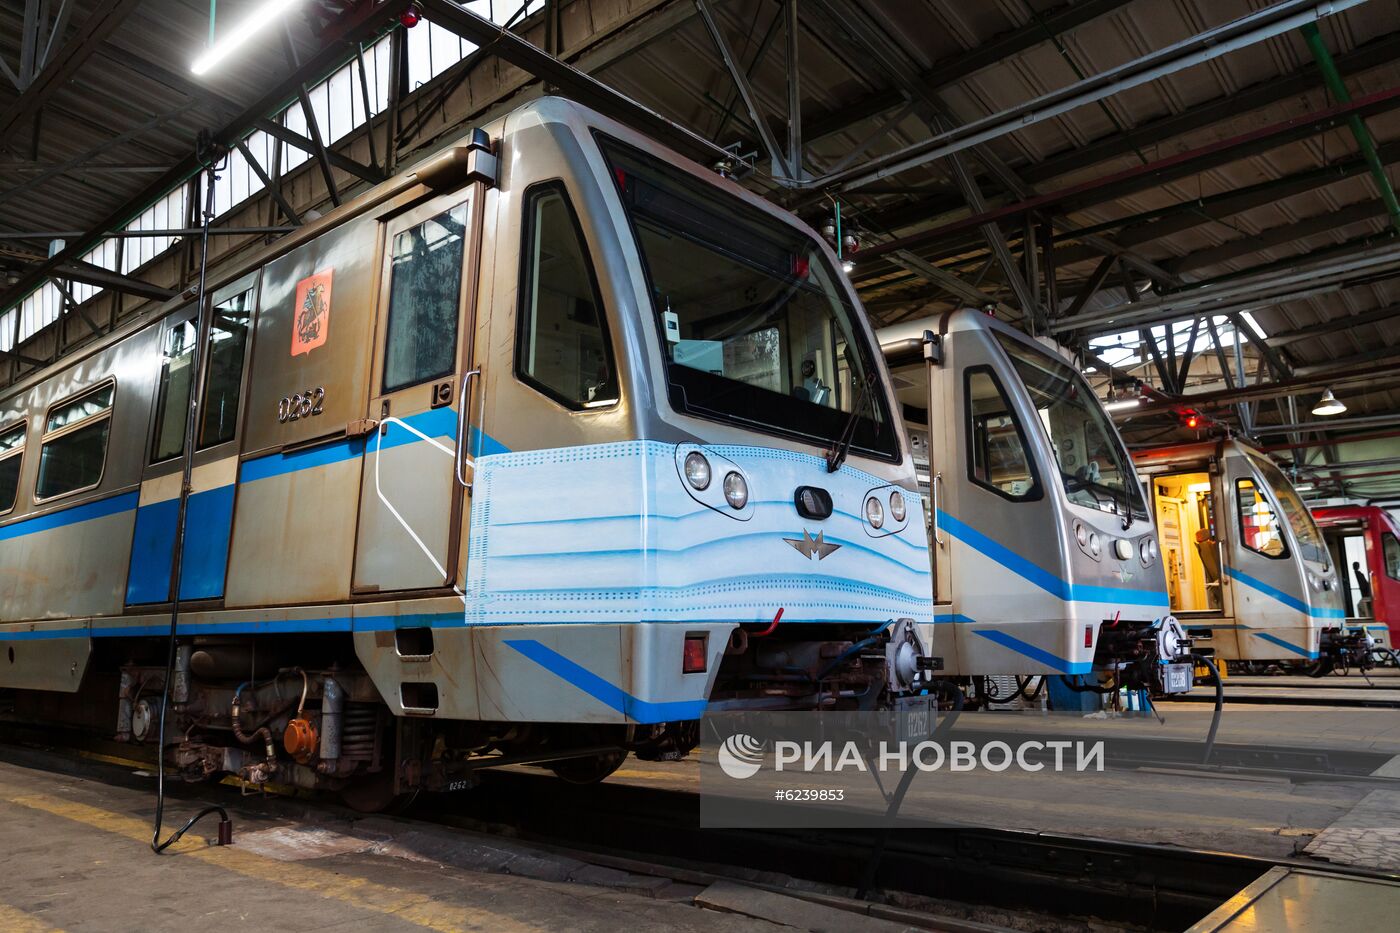 Поезд "в медицинской маске" запустили в московском метро